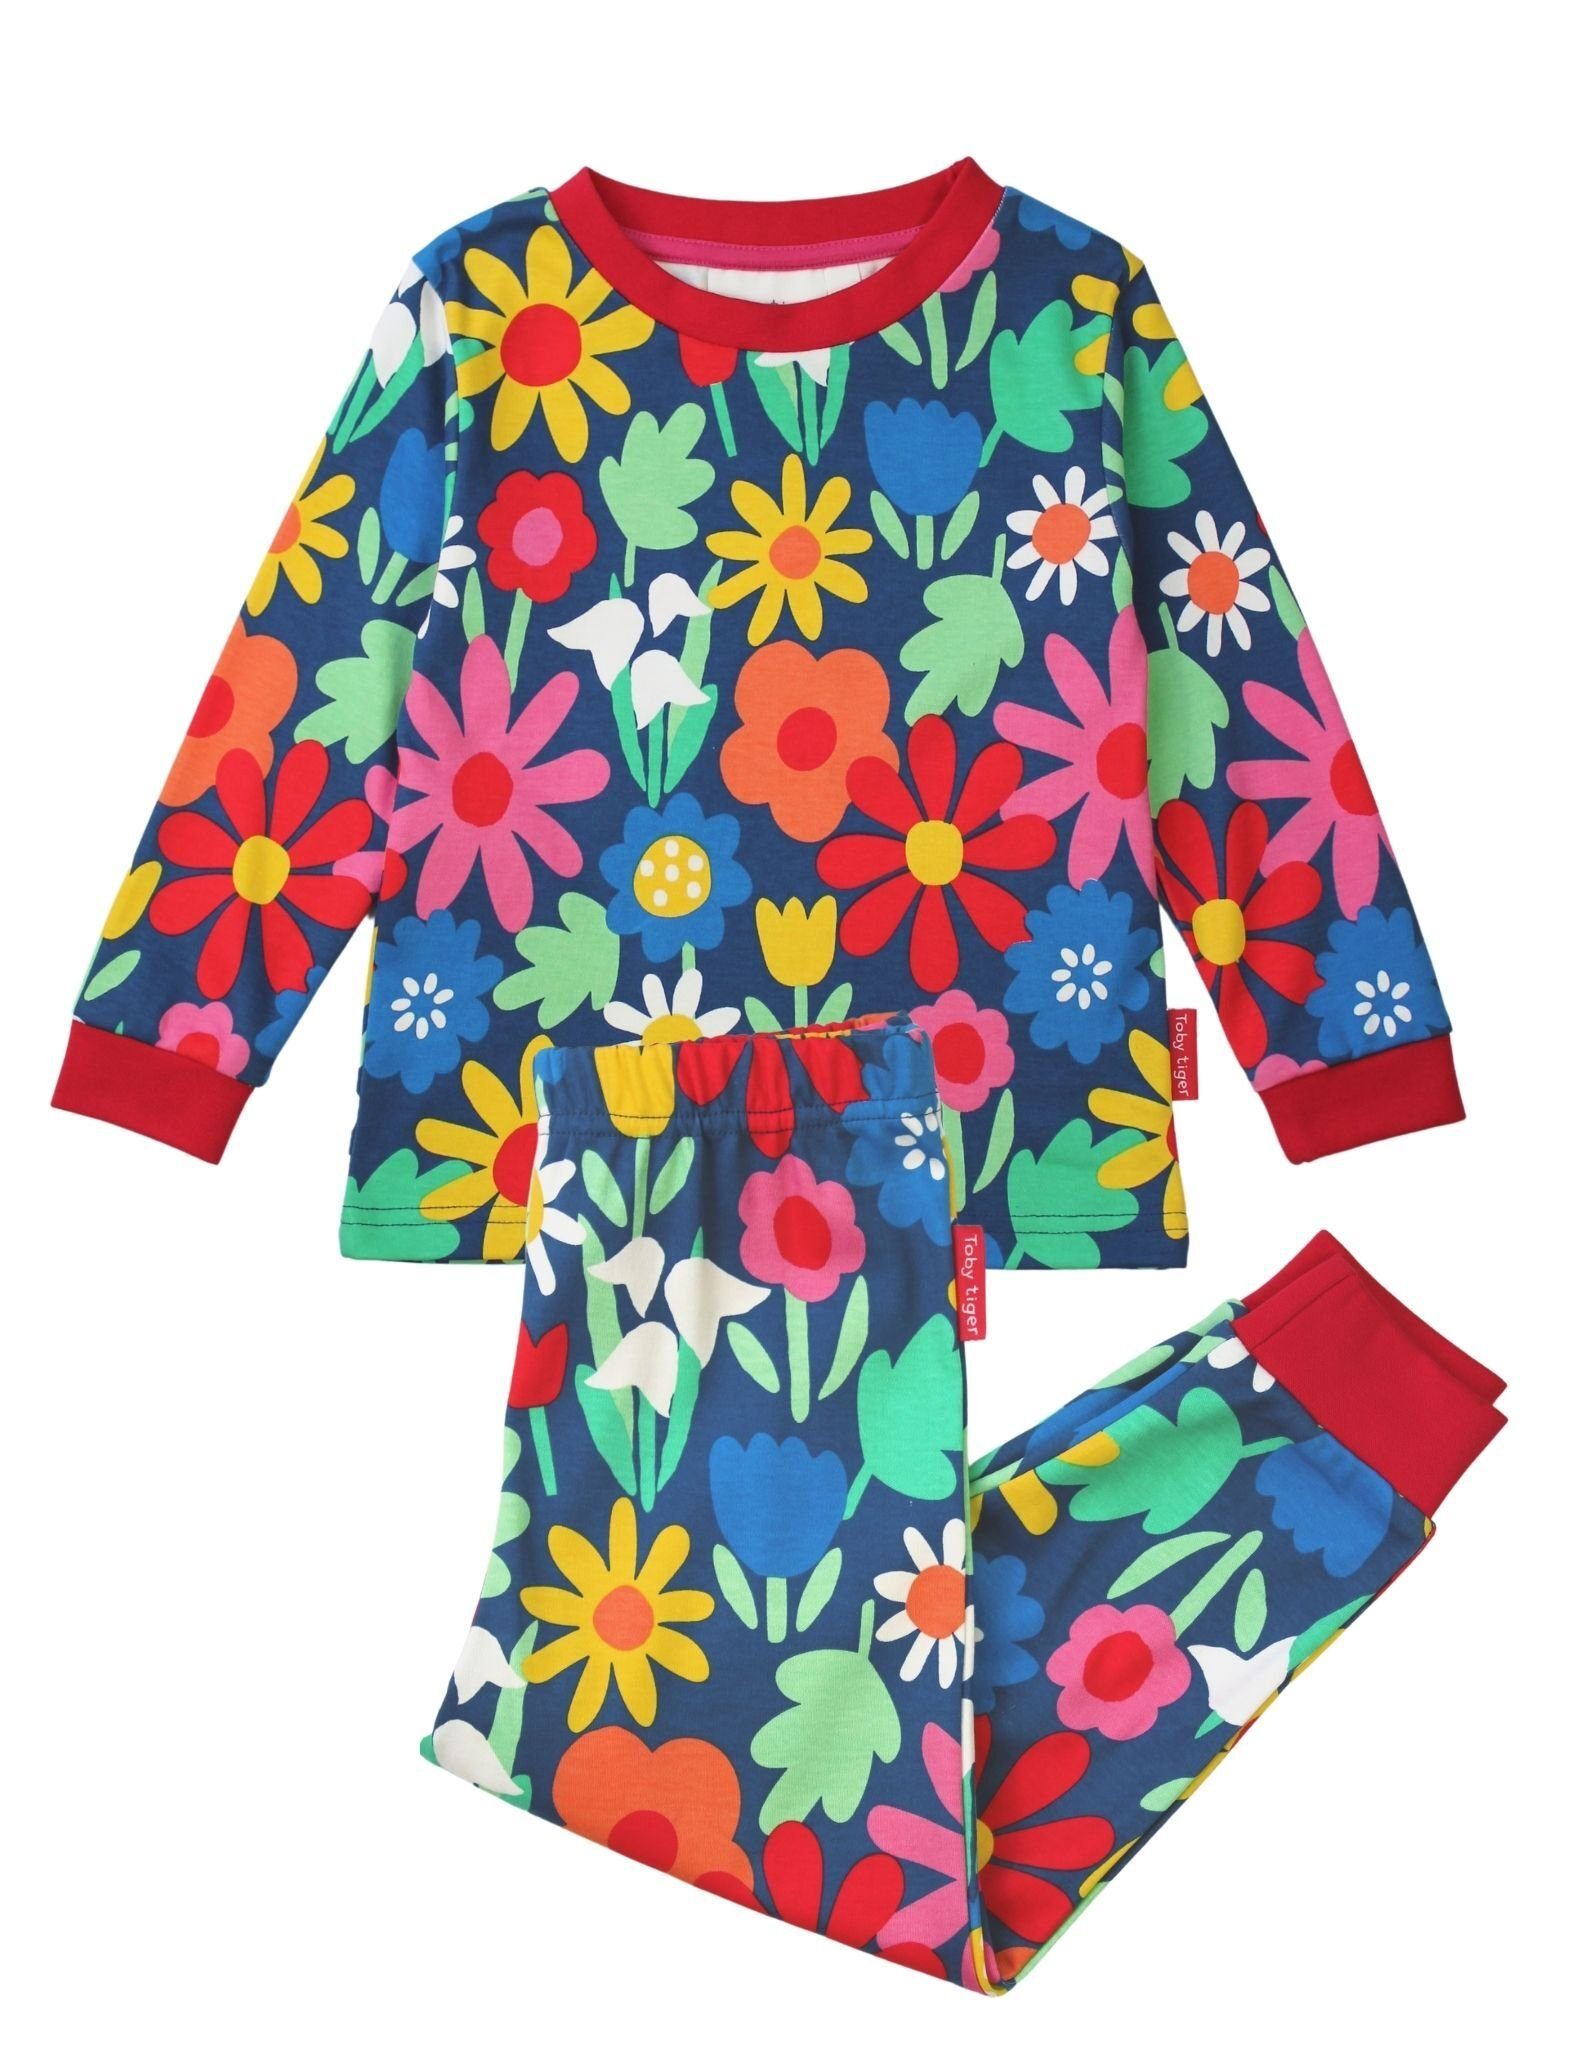 Blumen mit Schlafanzug Toby Tiger Print Schlafanzug